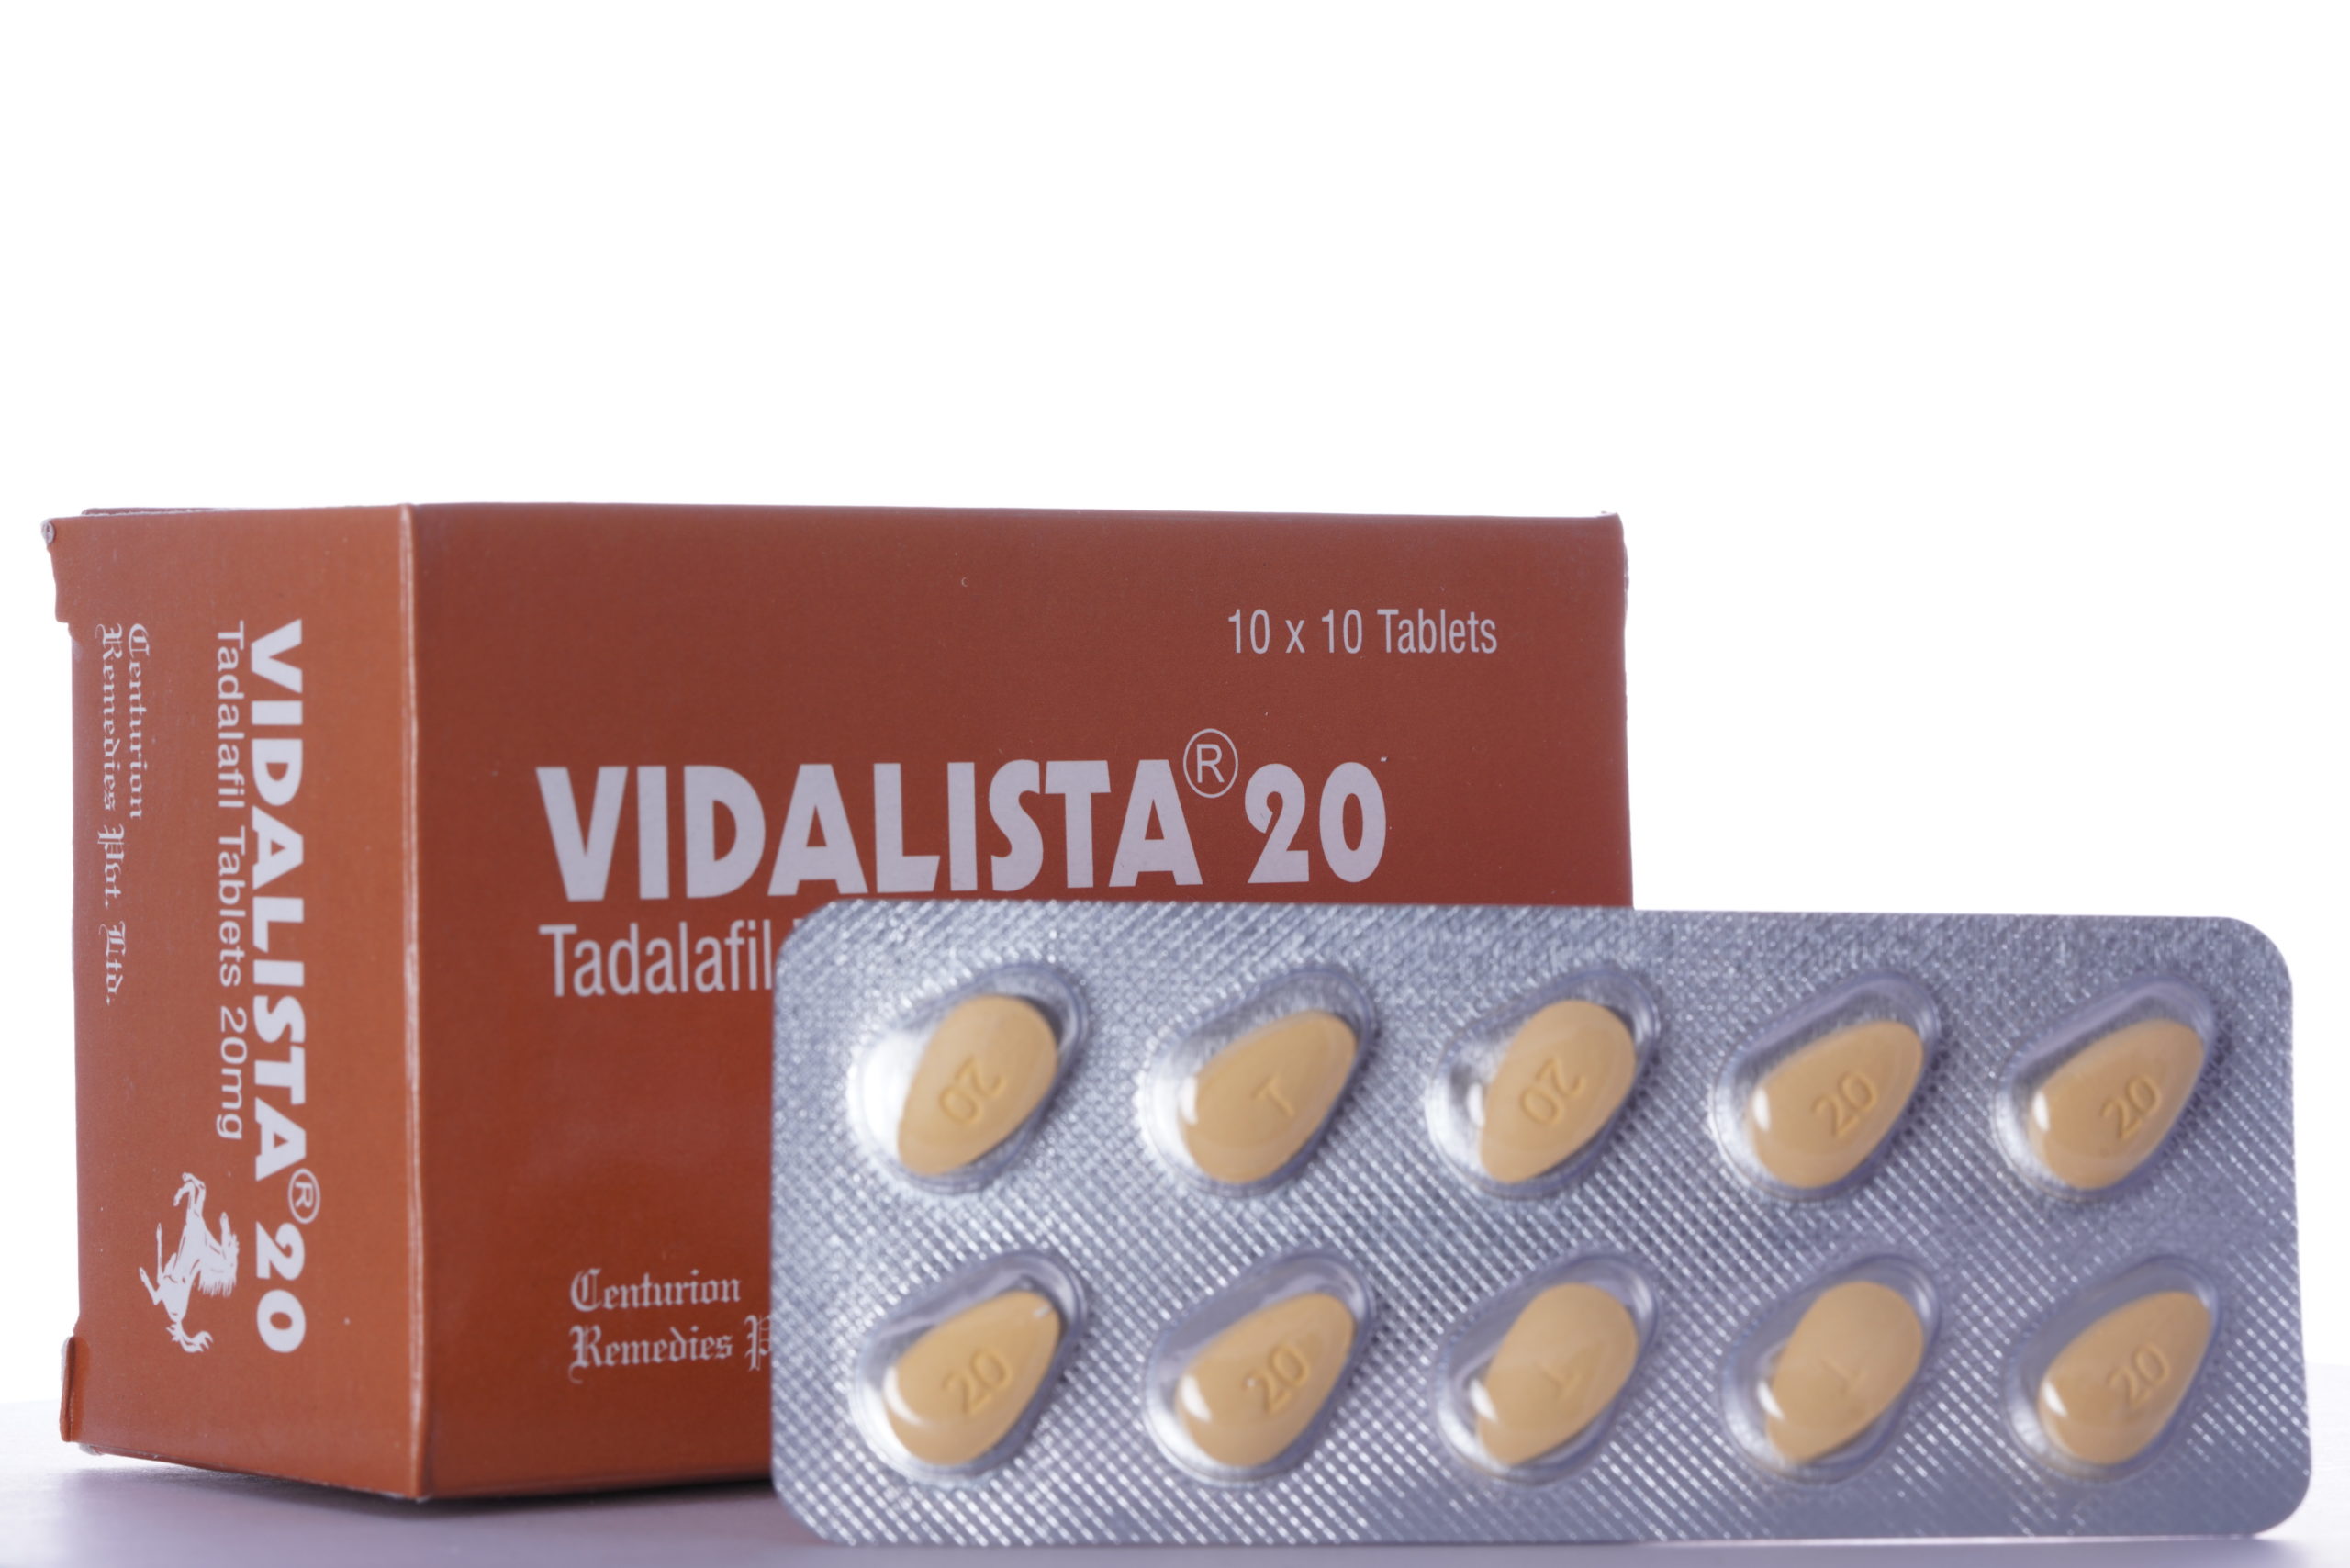 buy-vidalista-tadalafil-cialis-20-mg-10-tablets-online-aipctshop